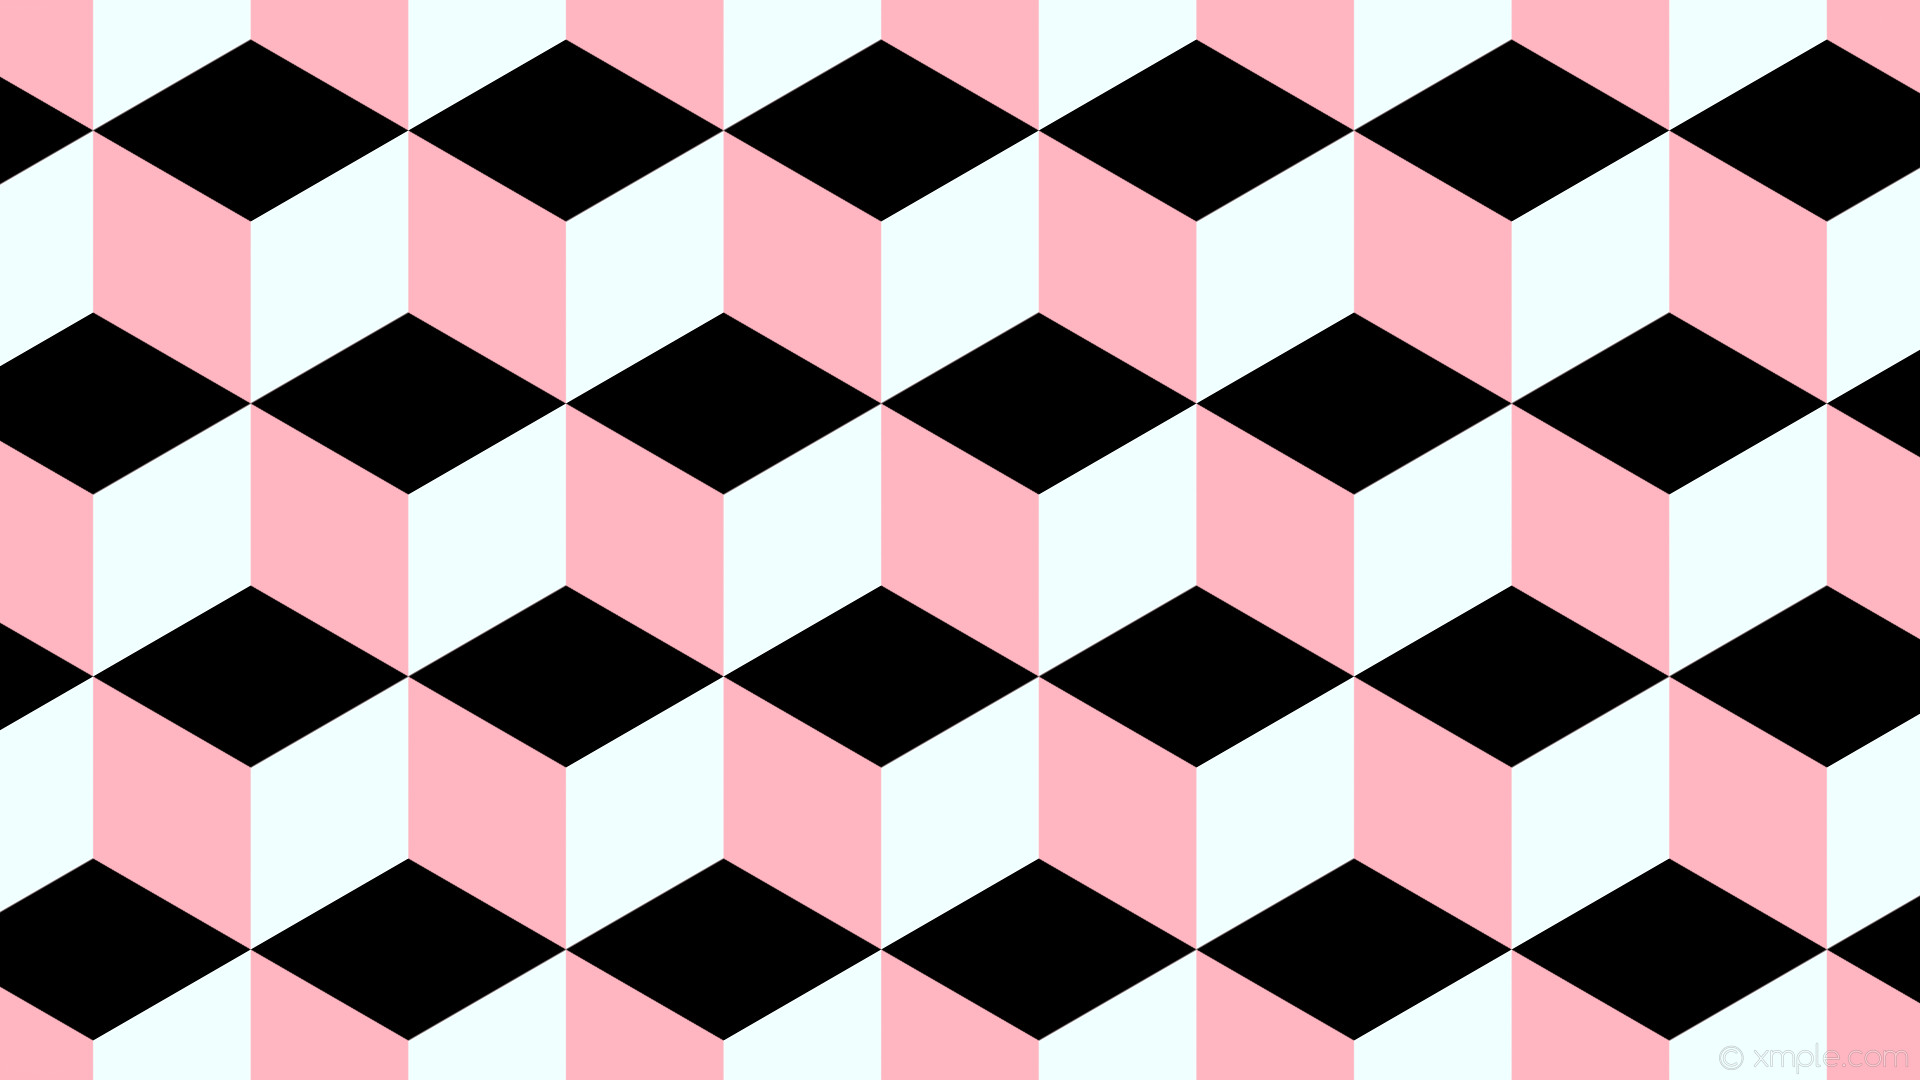 1920x1080 wallpaper 3d cubes black white pink light pink azure #ffb6c1 #f0ffff  #000000 120